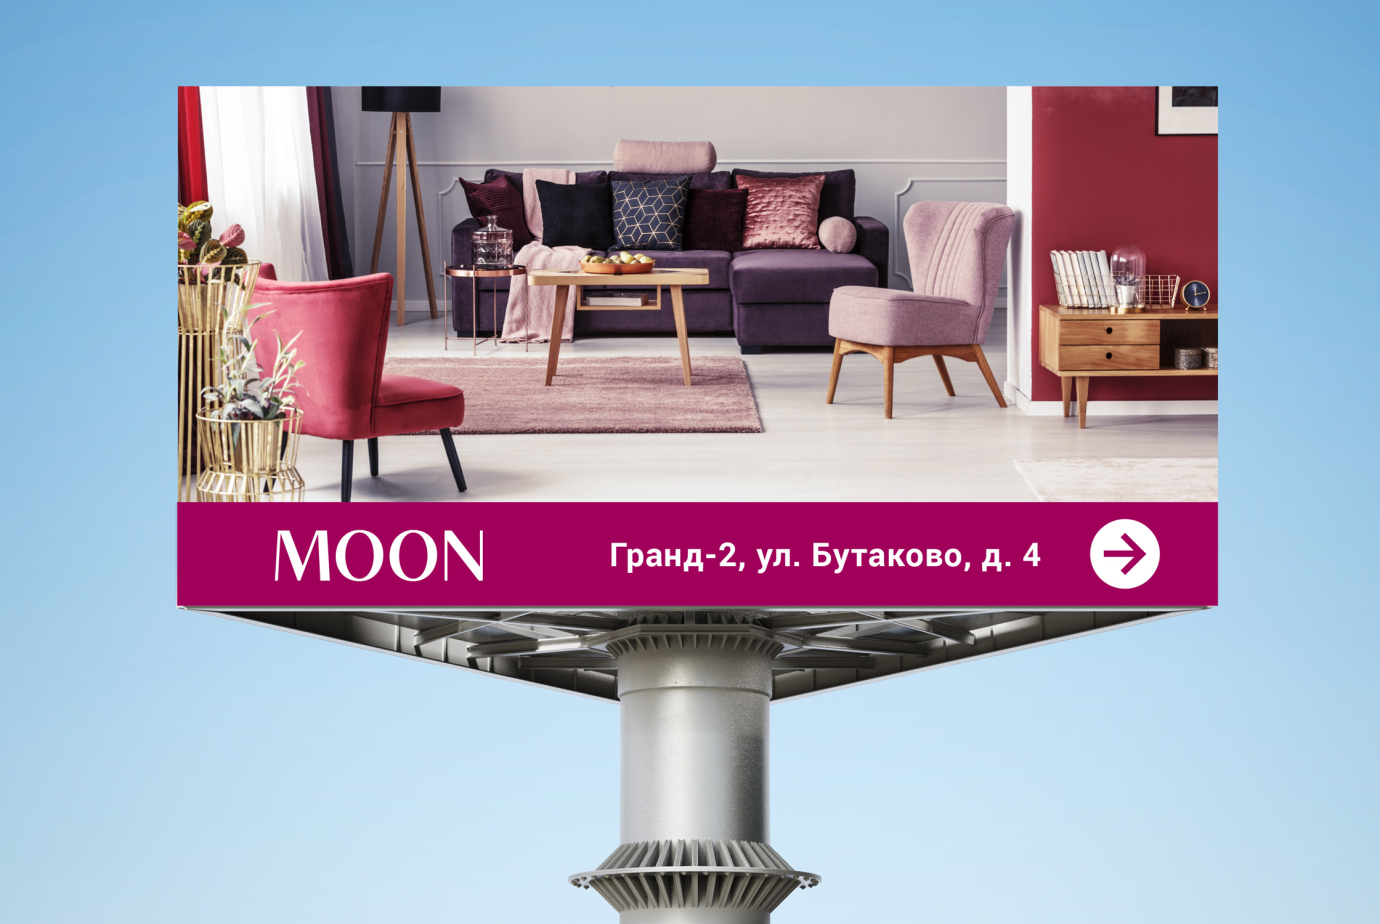 Создание рекламных материалов для бренда Moon